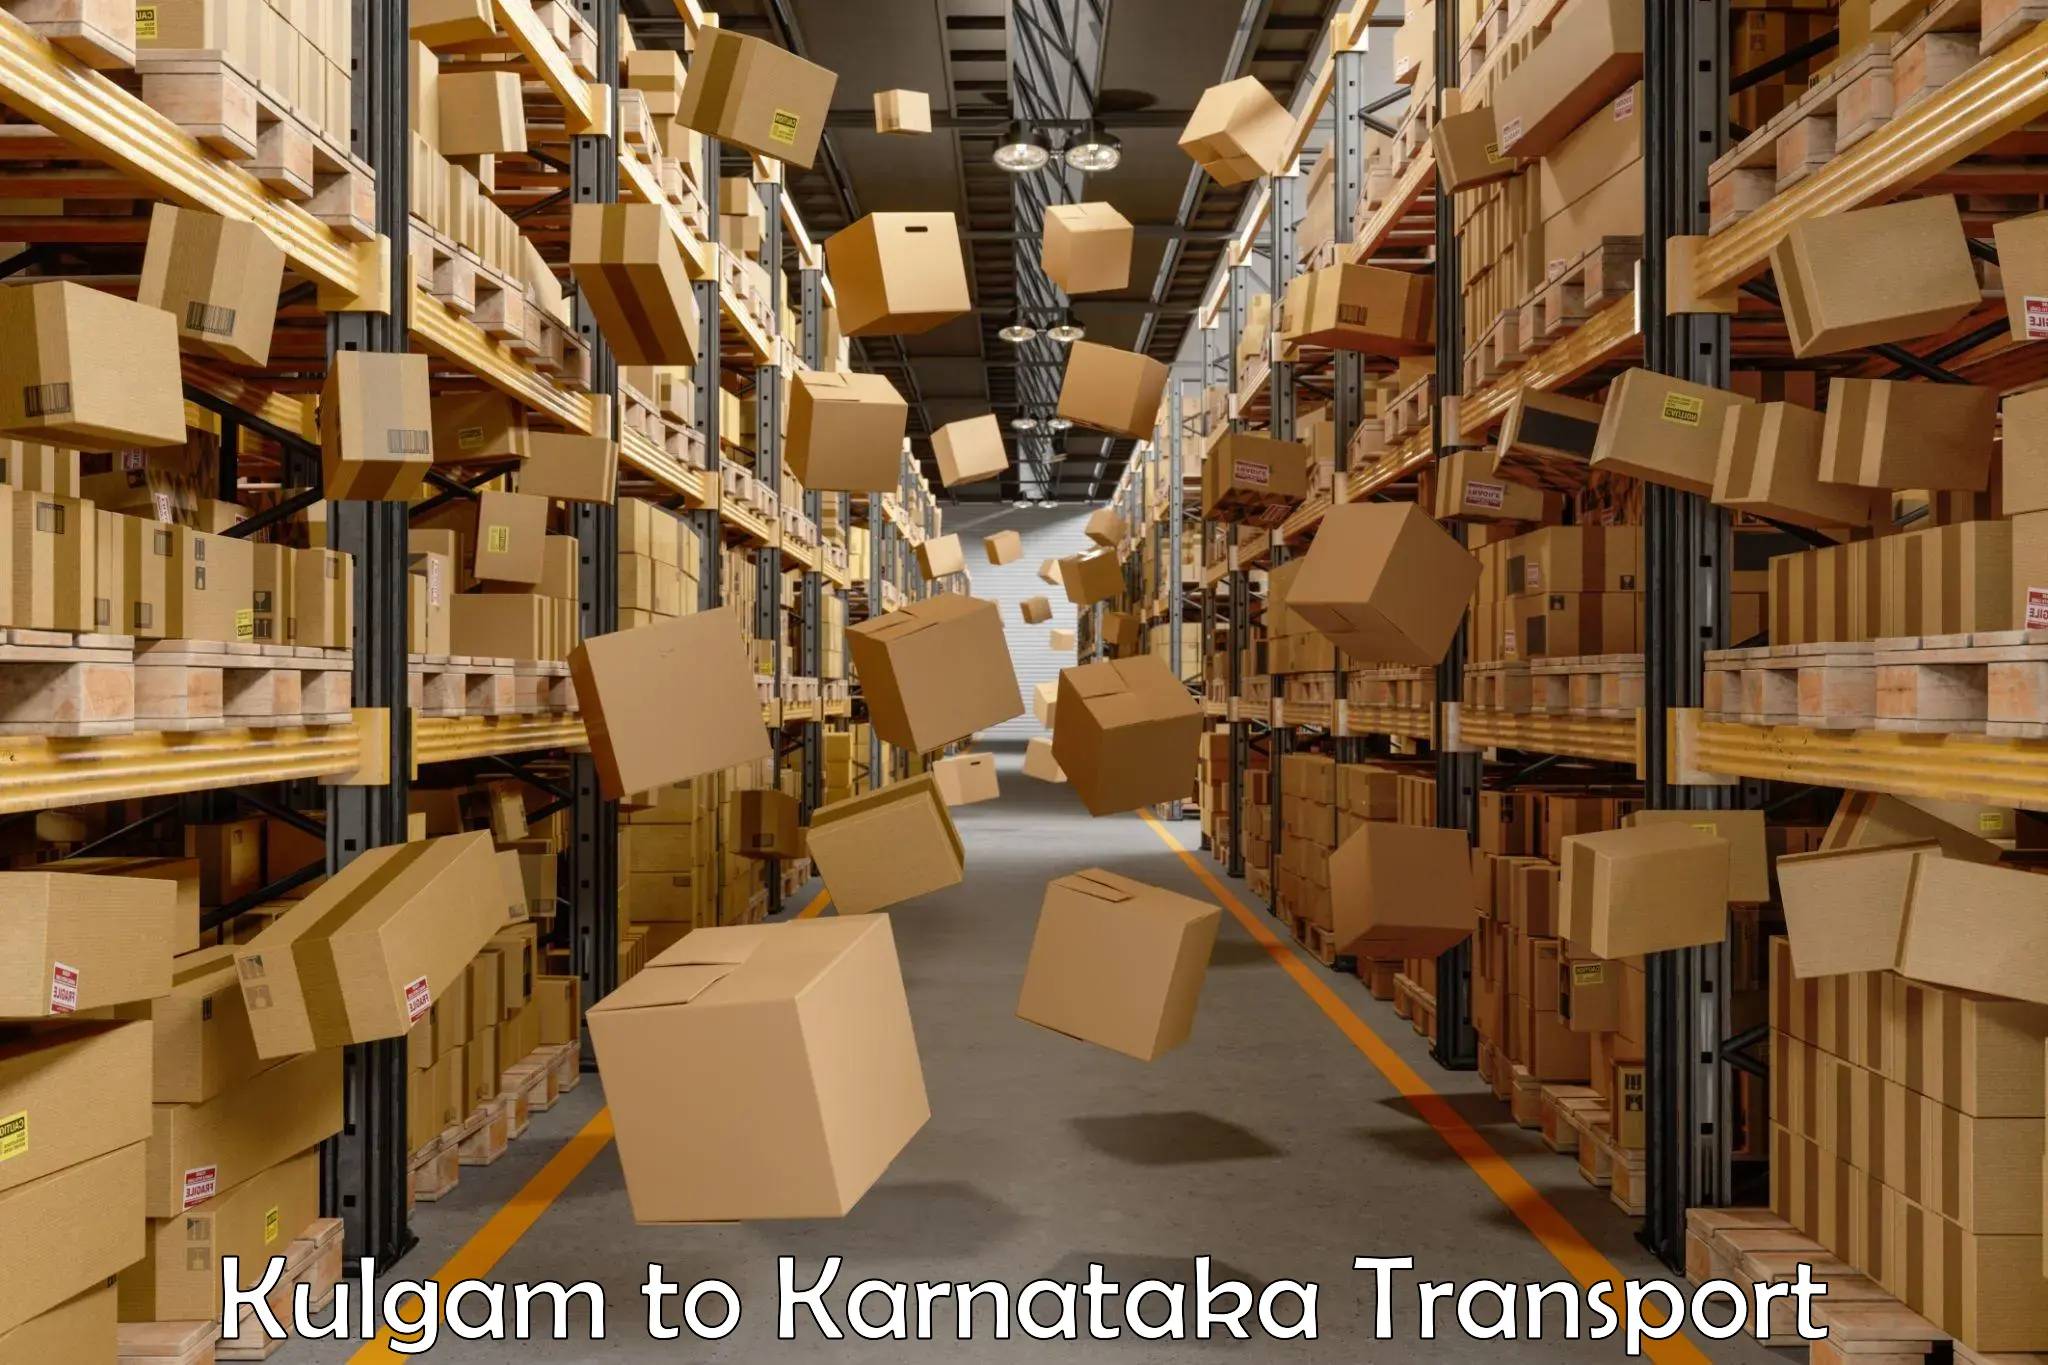 Truck transport companies in India Kulgam to Karnataka